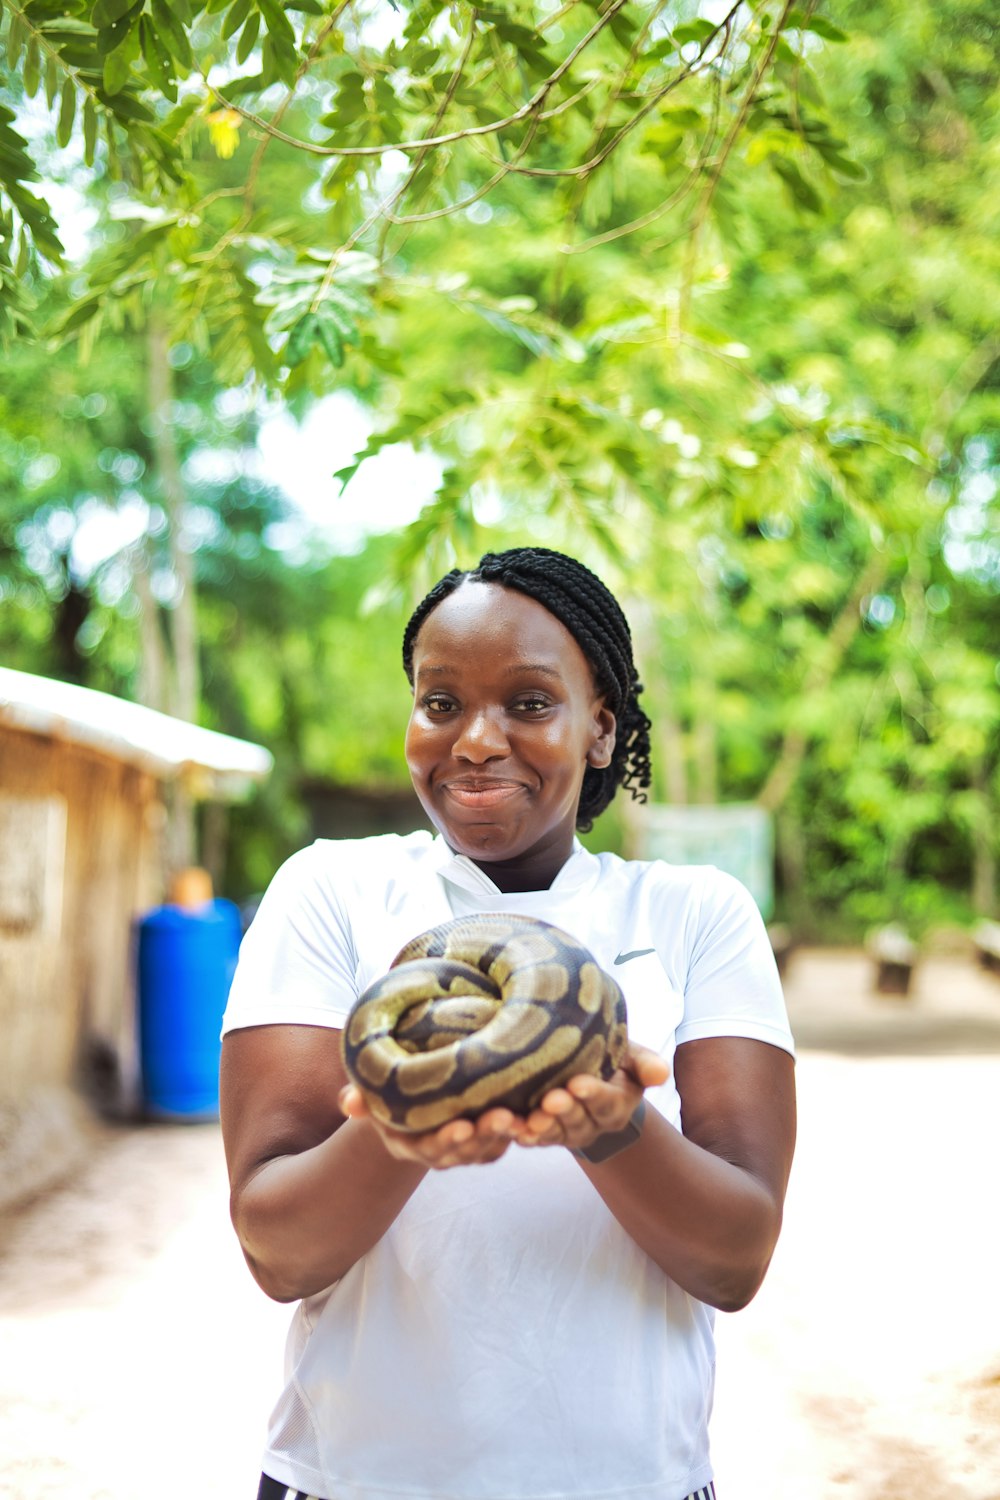 Una mujer sosteniendo una gran serpiente en sus manos